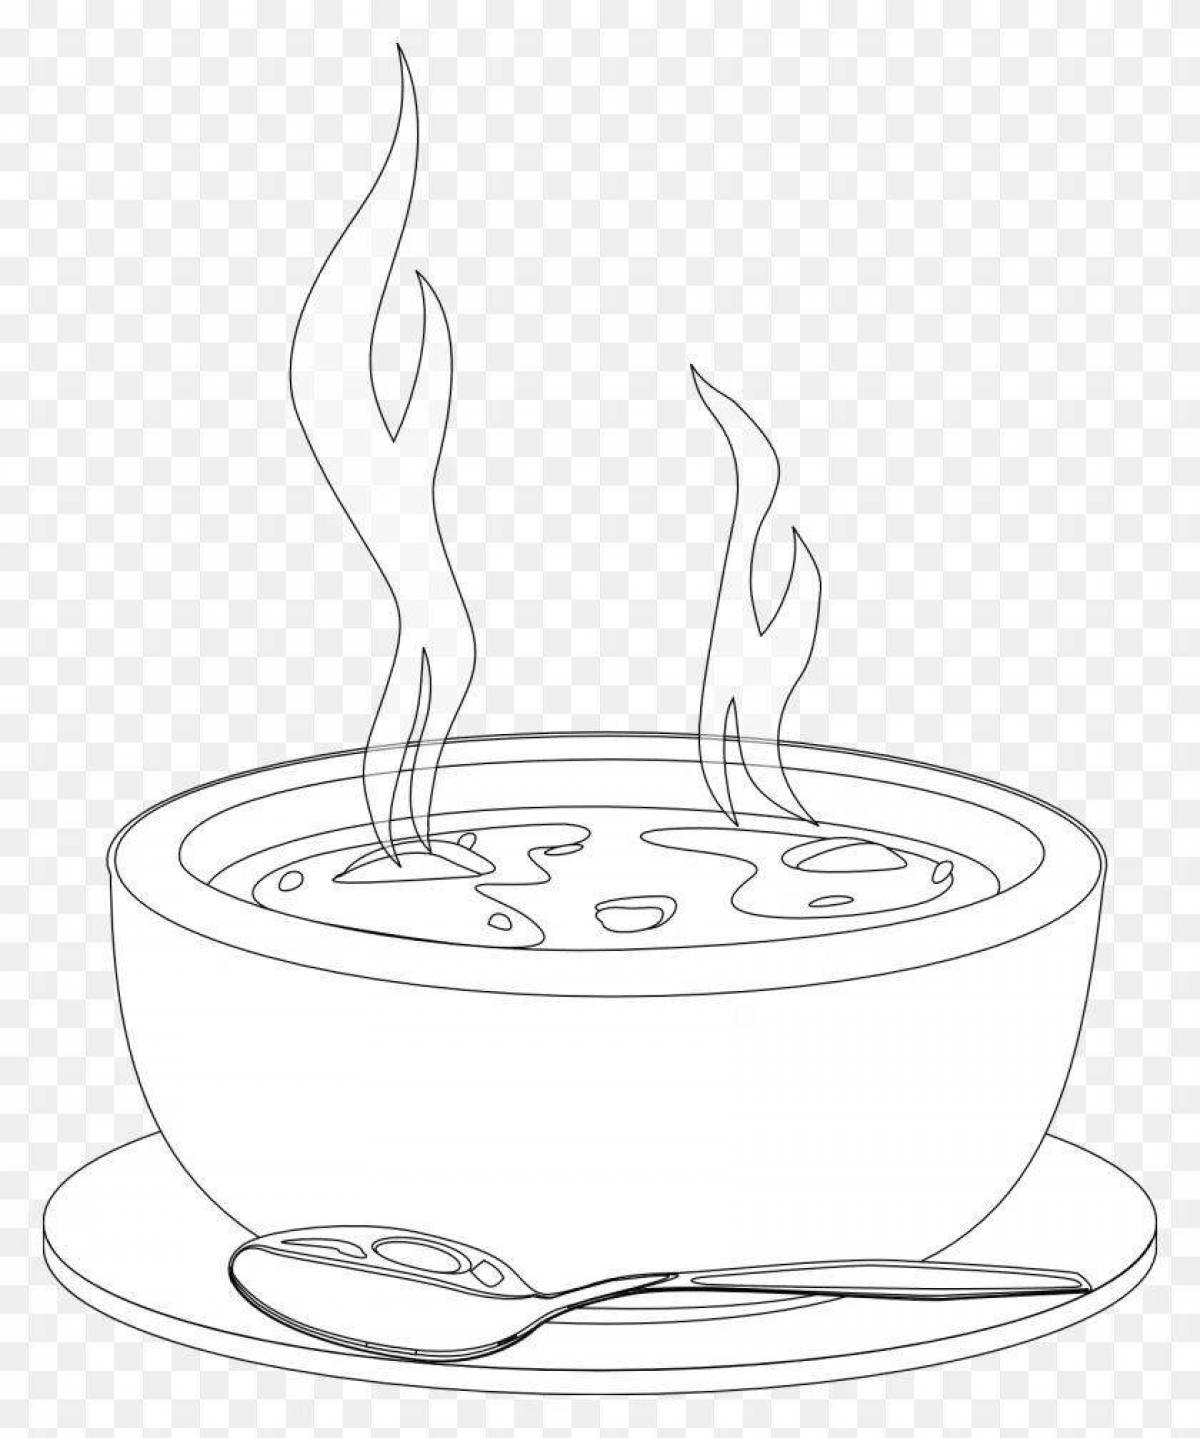 Adorable soup bowl coloring page